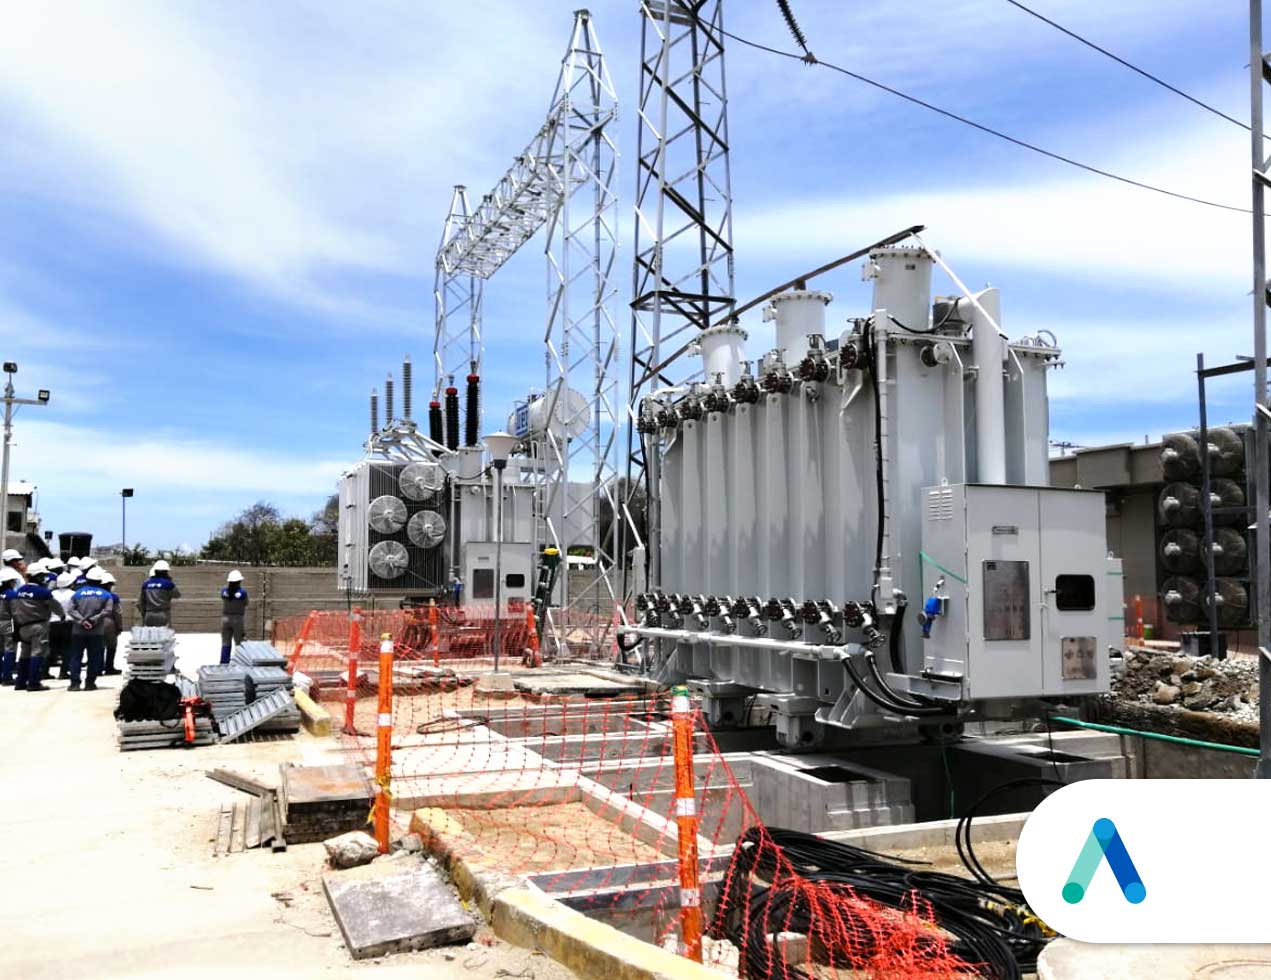 Labores preliminares para instalación de nuevo transformador de potencia en Ciénaga